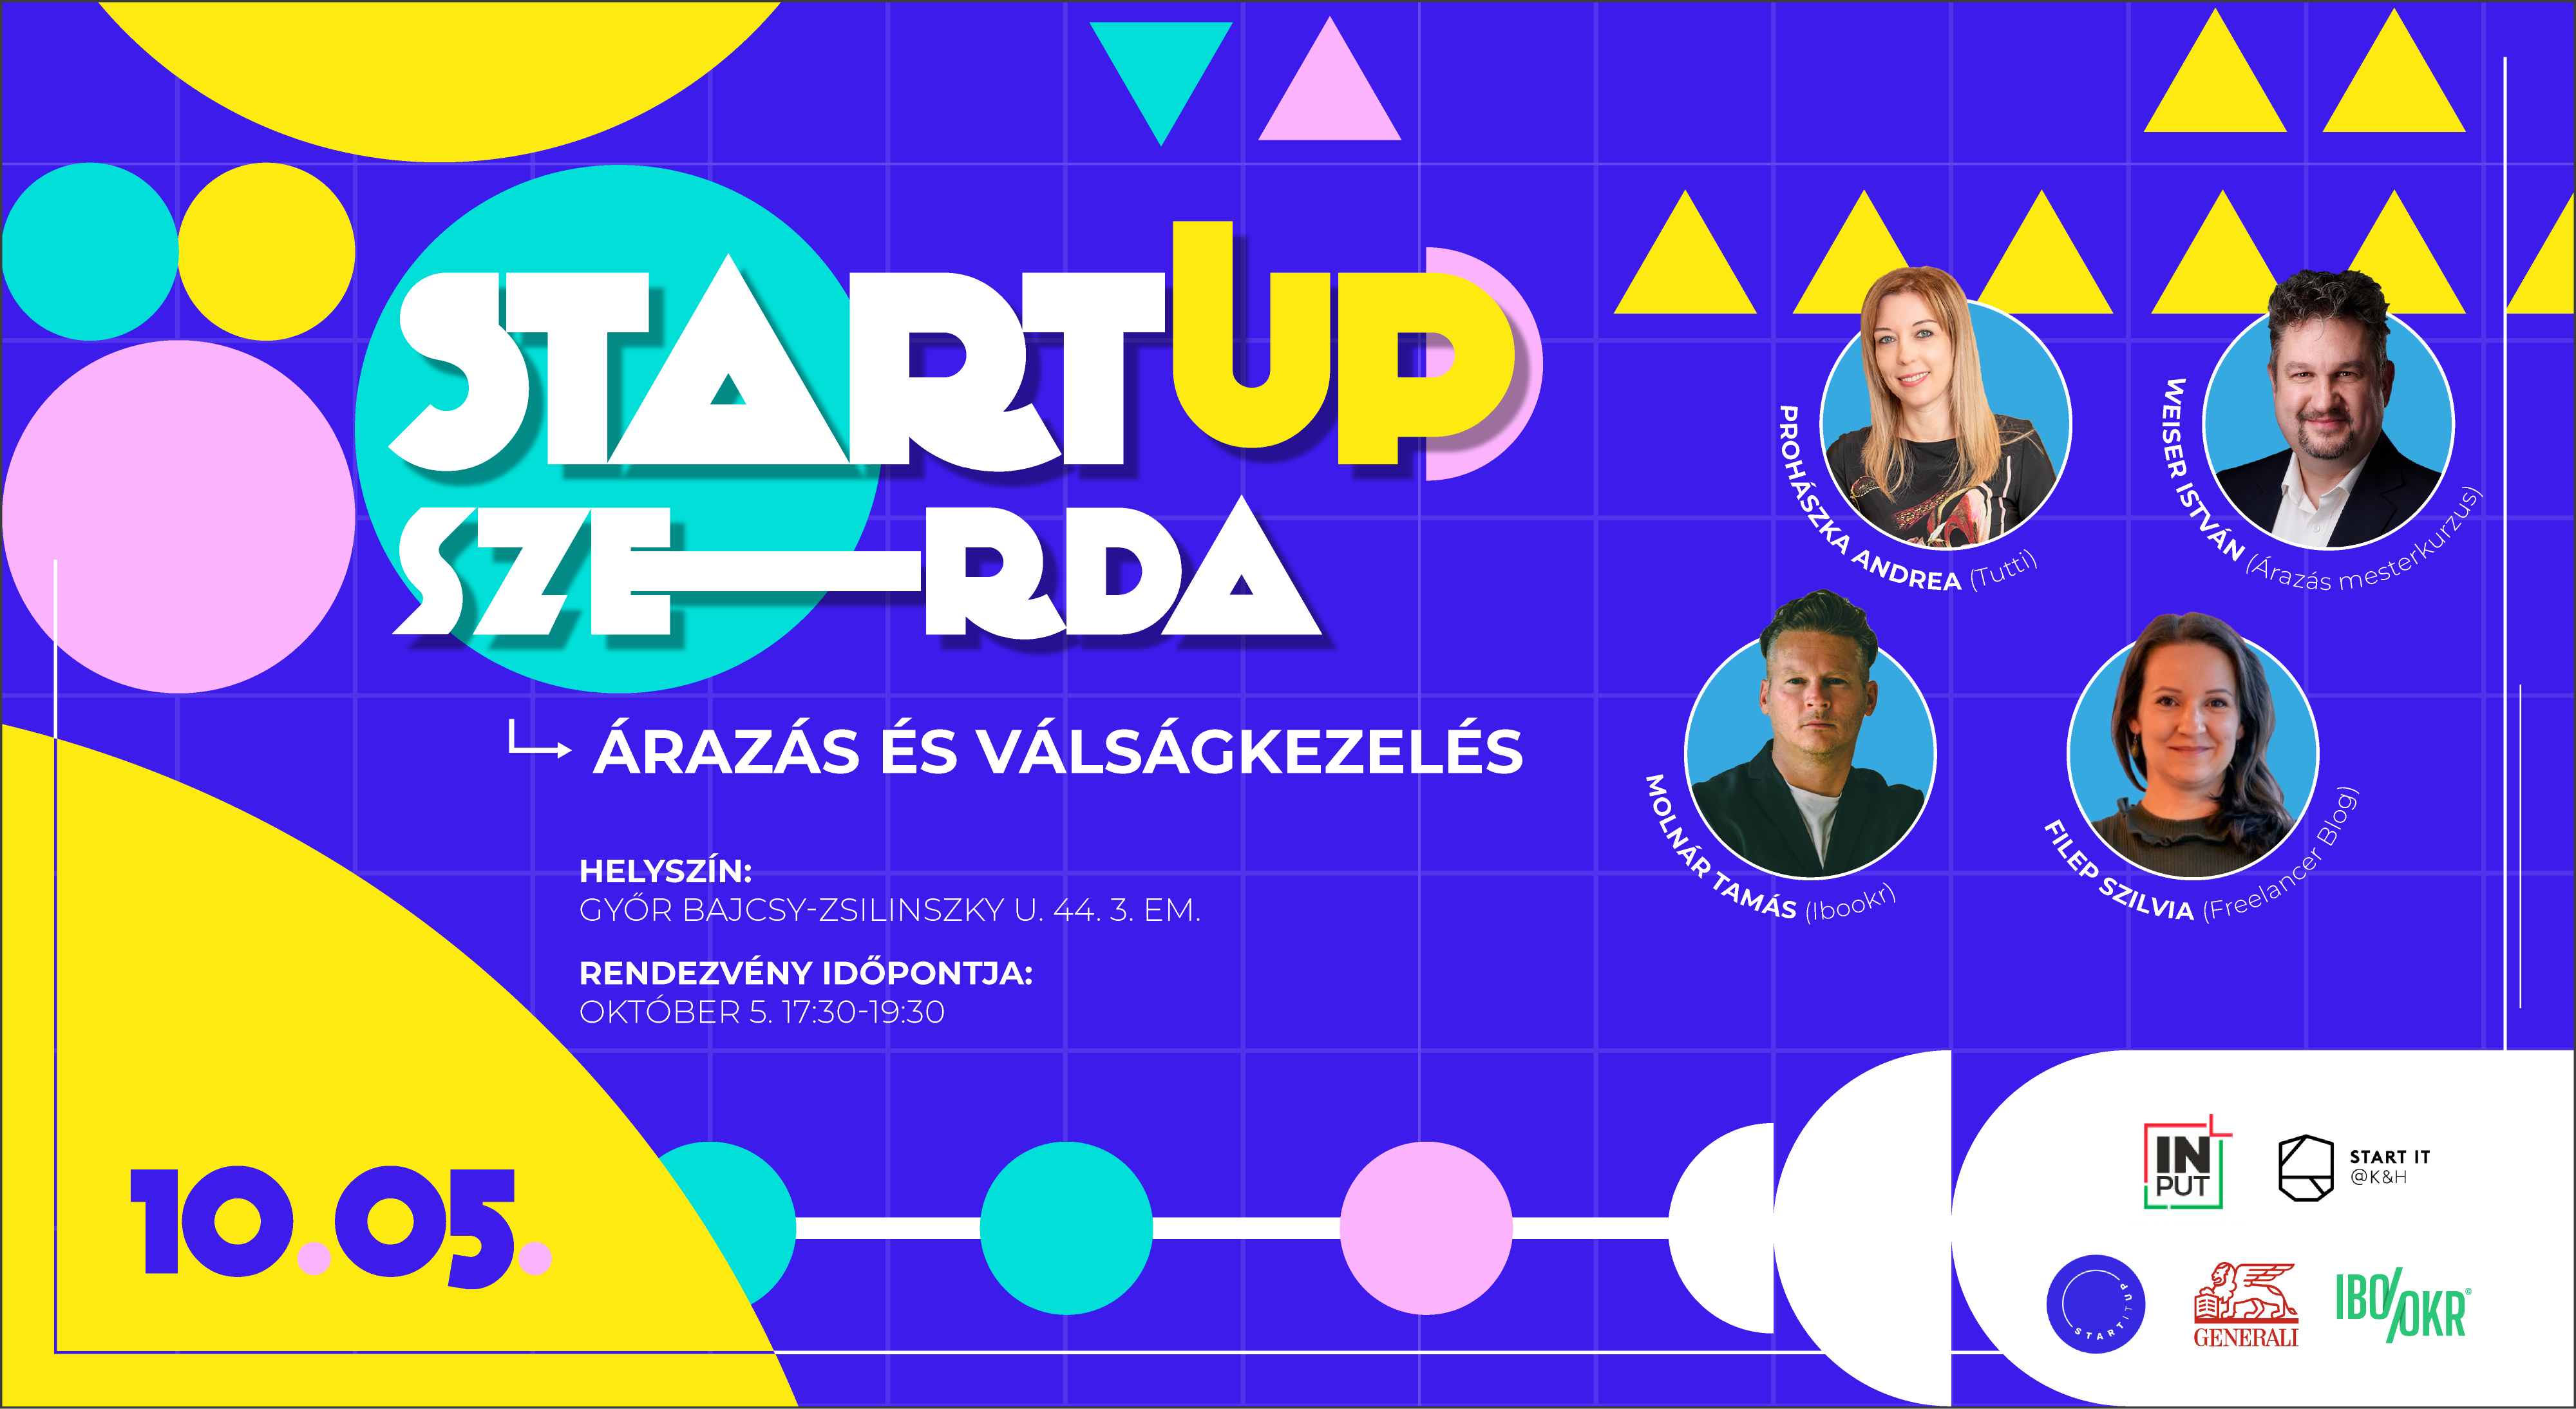 Startup Szerda – Árazás és válságkezelés